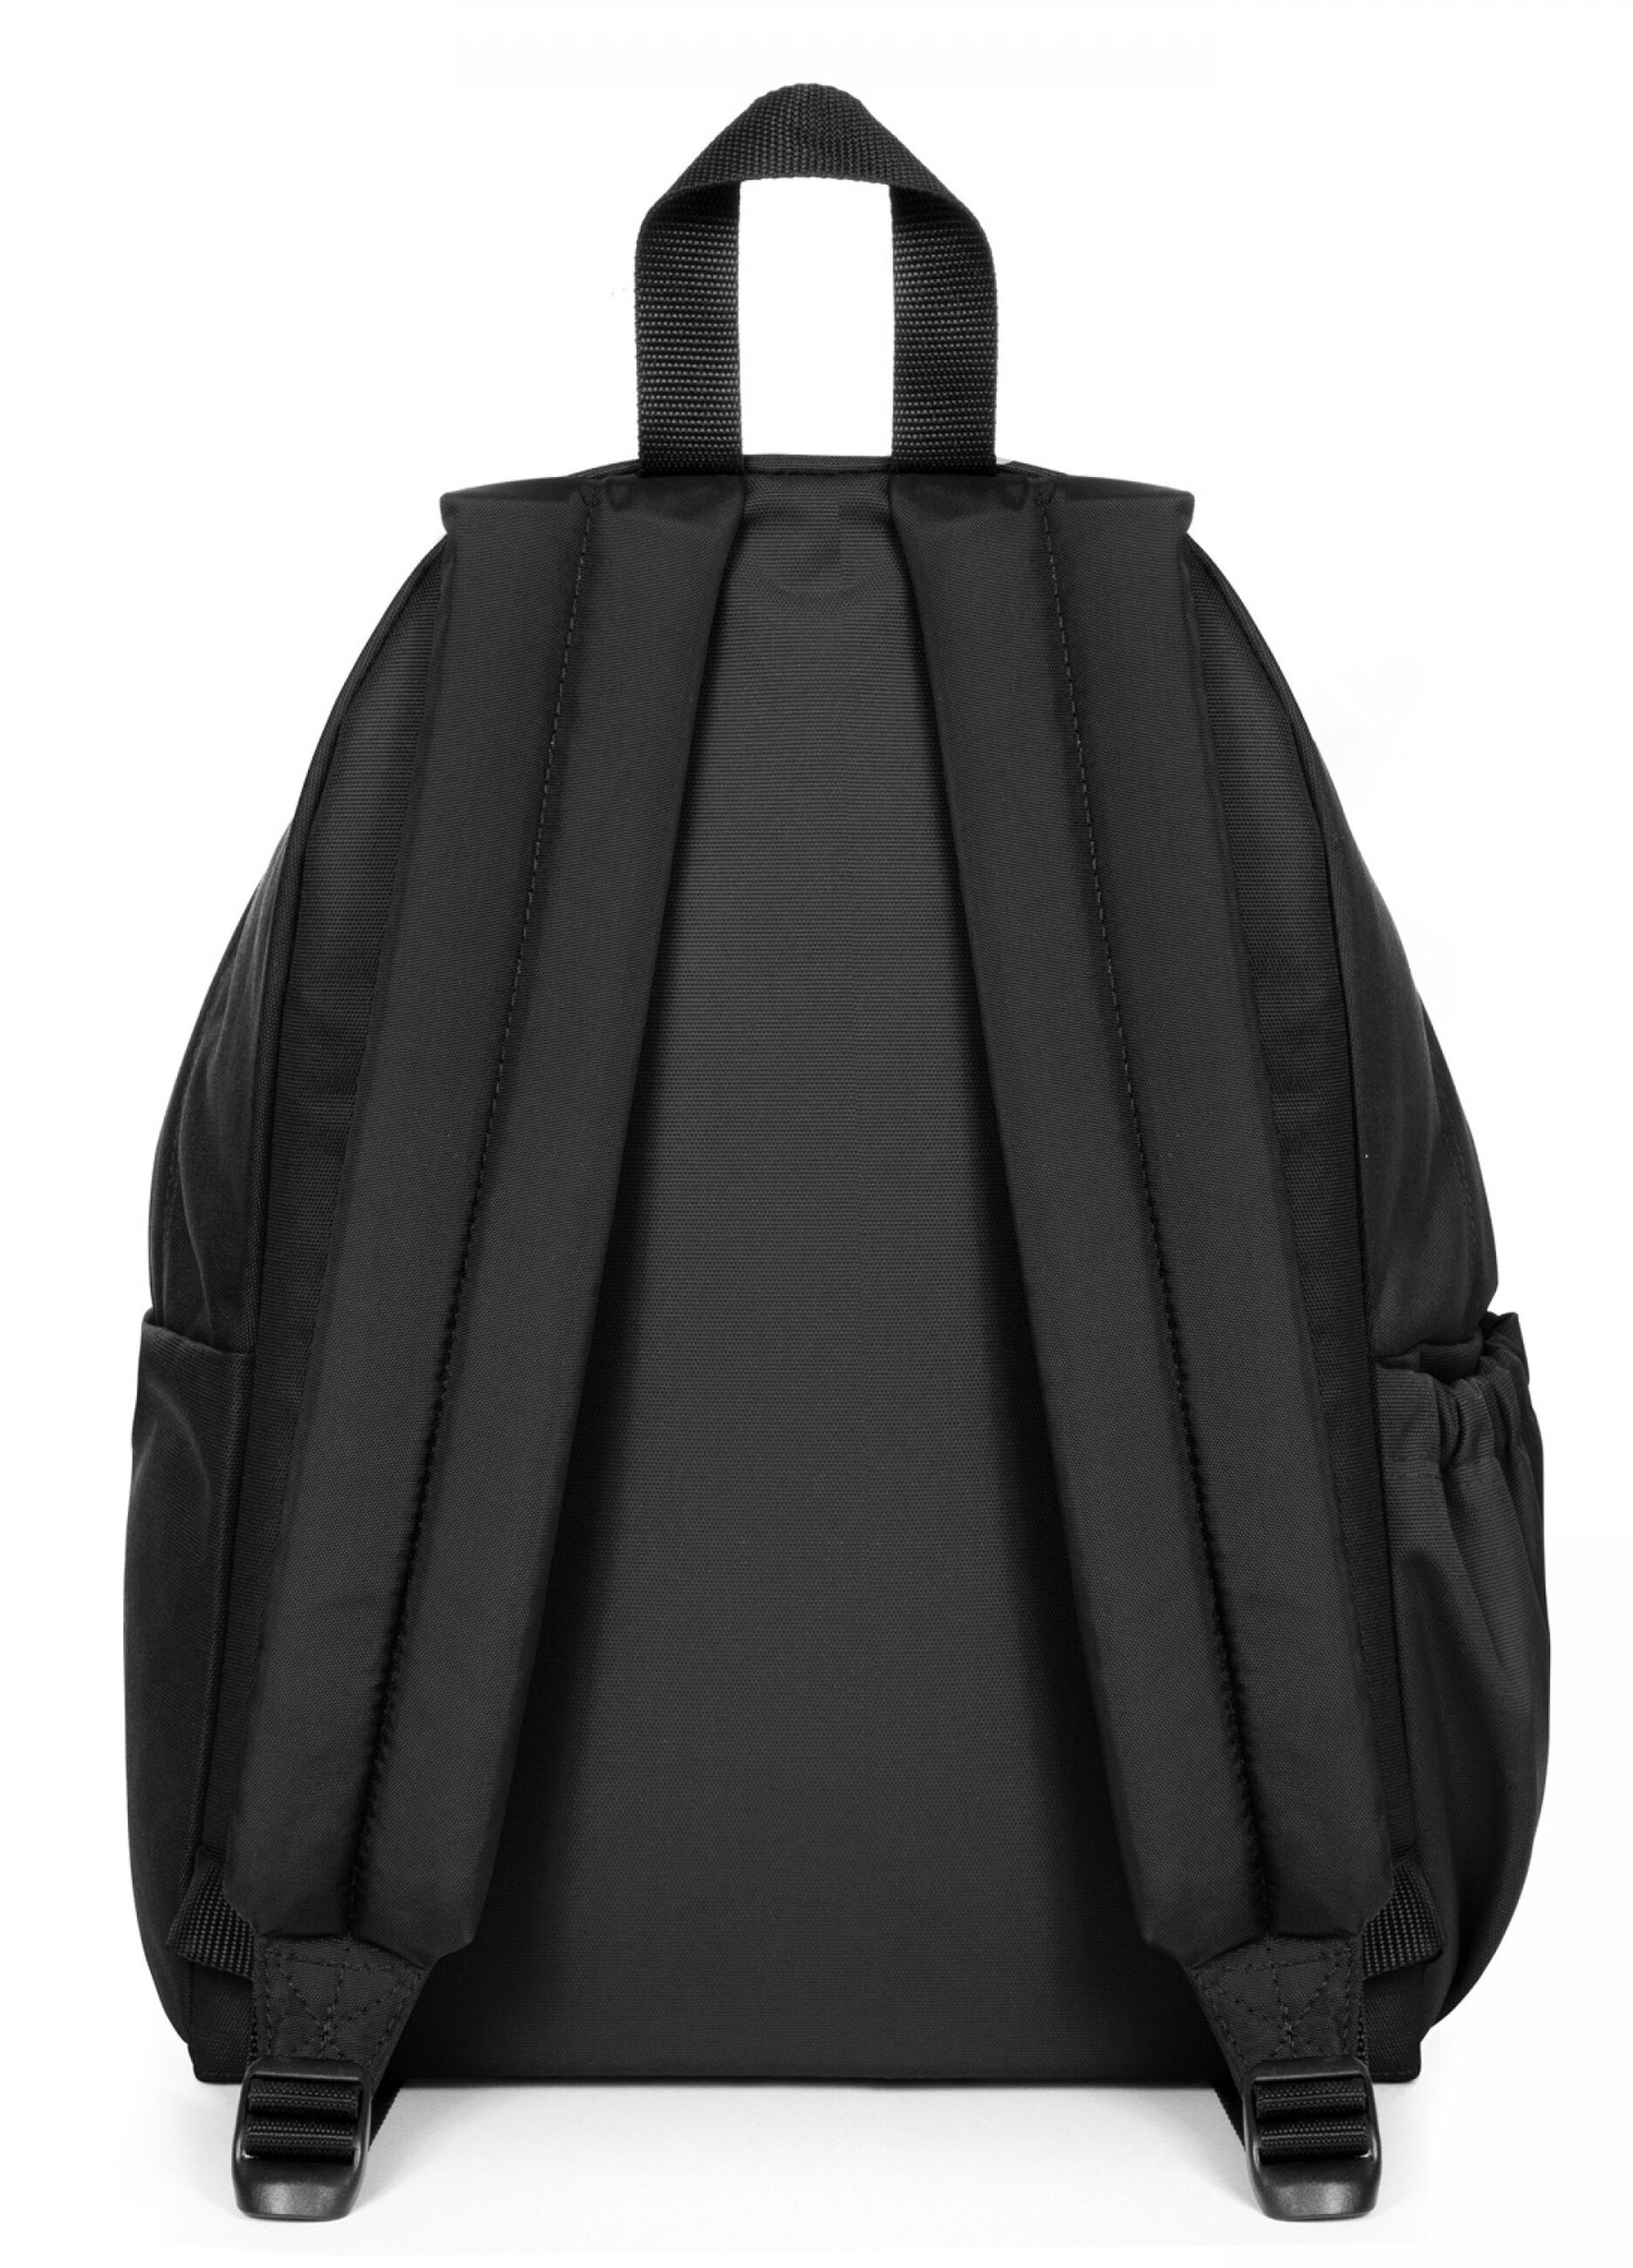 Eastpak backpack